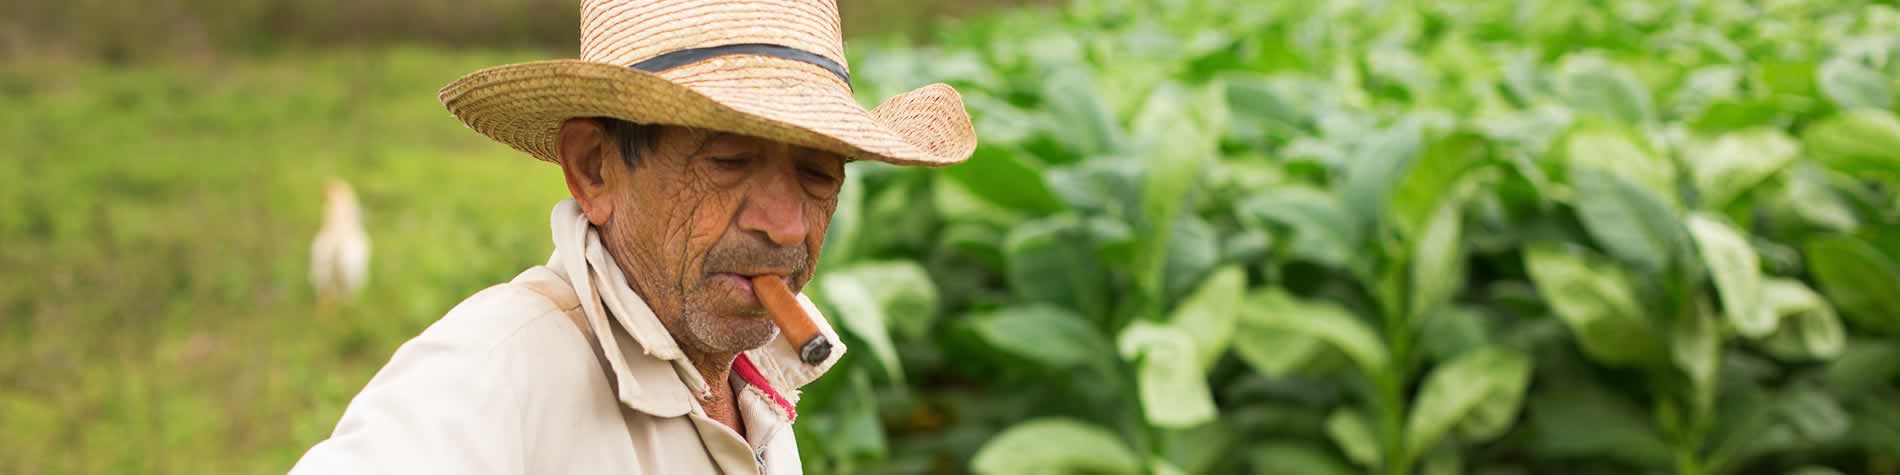 Plantaciones tabaco, Cuba